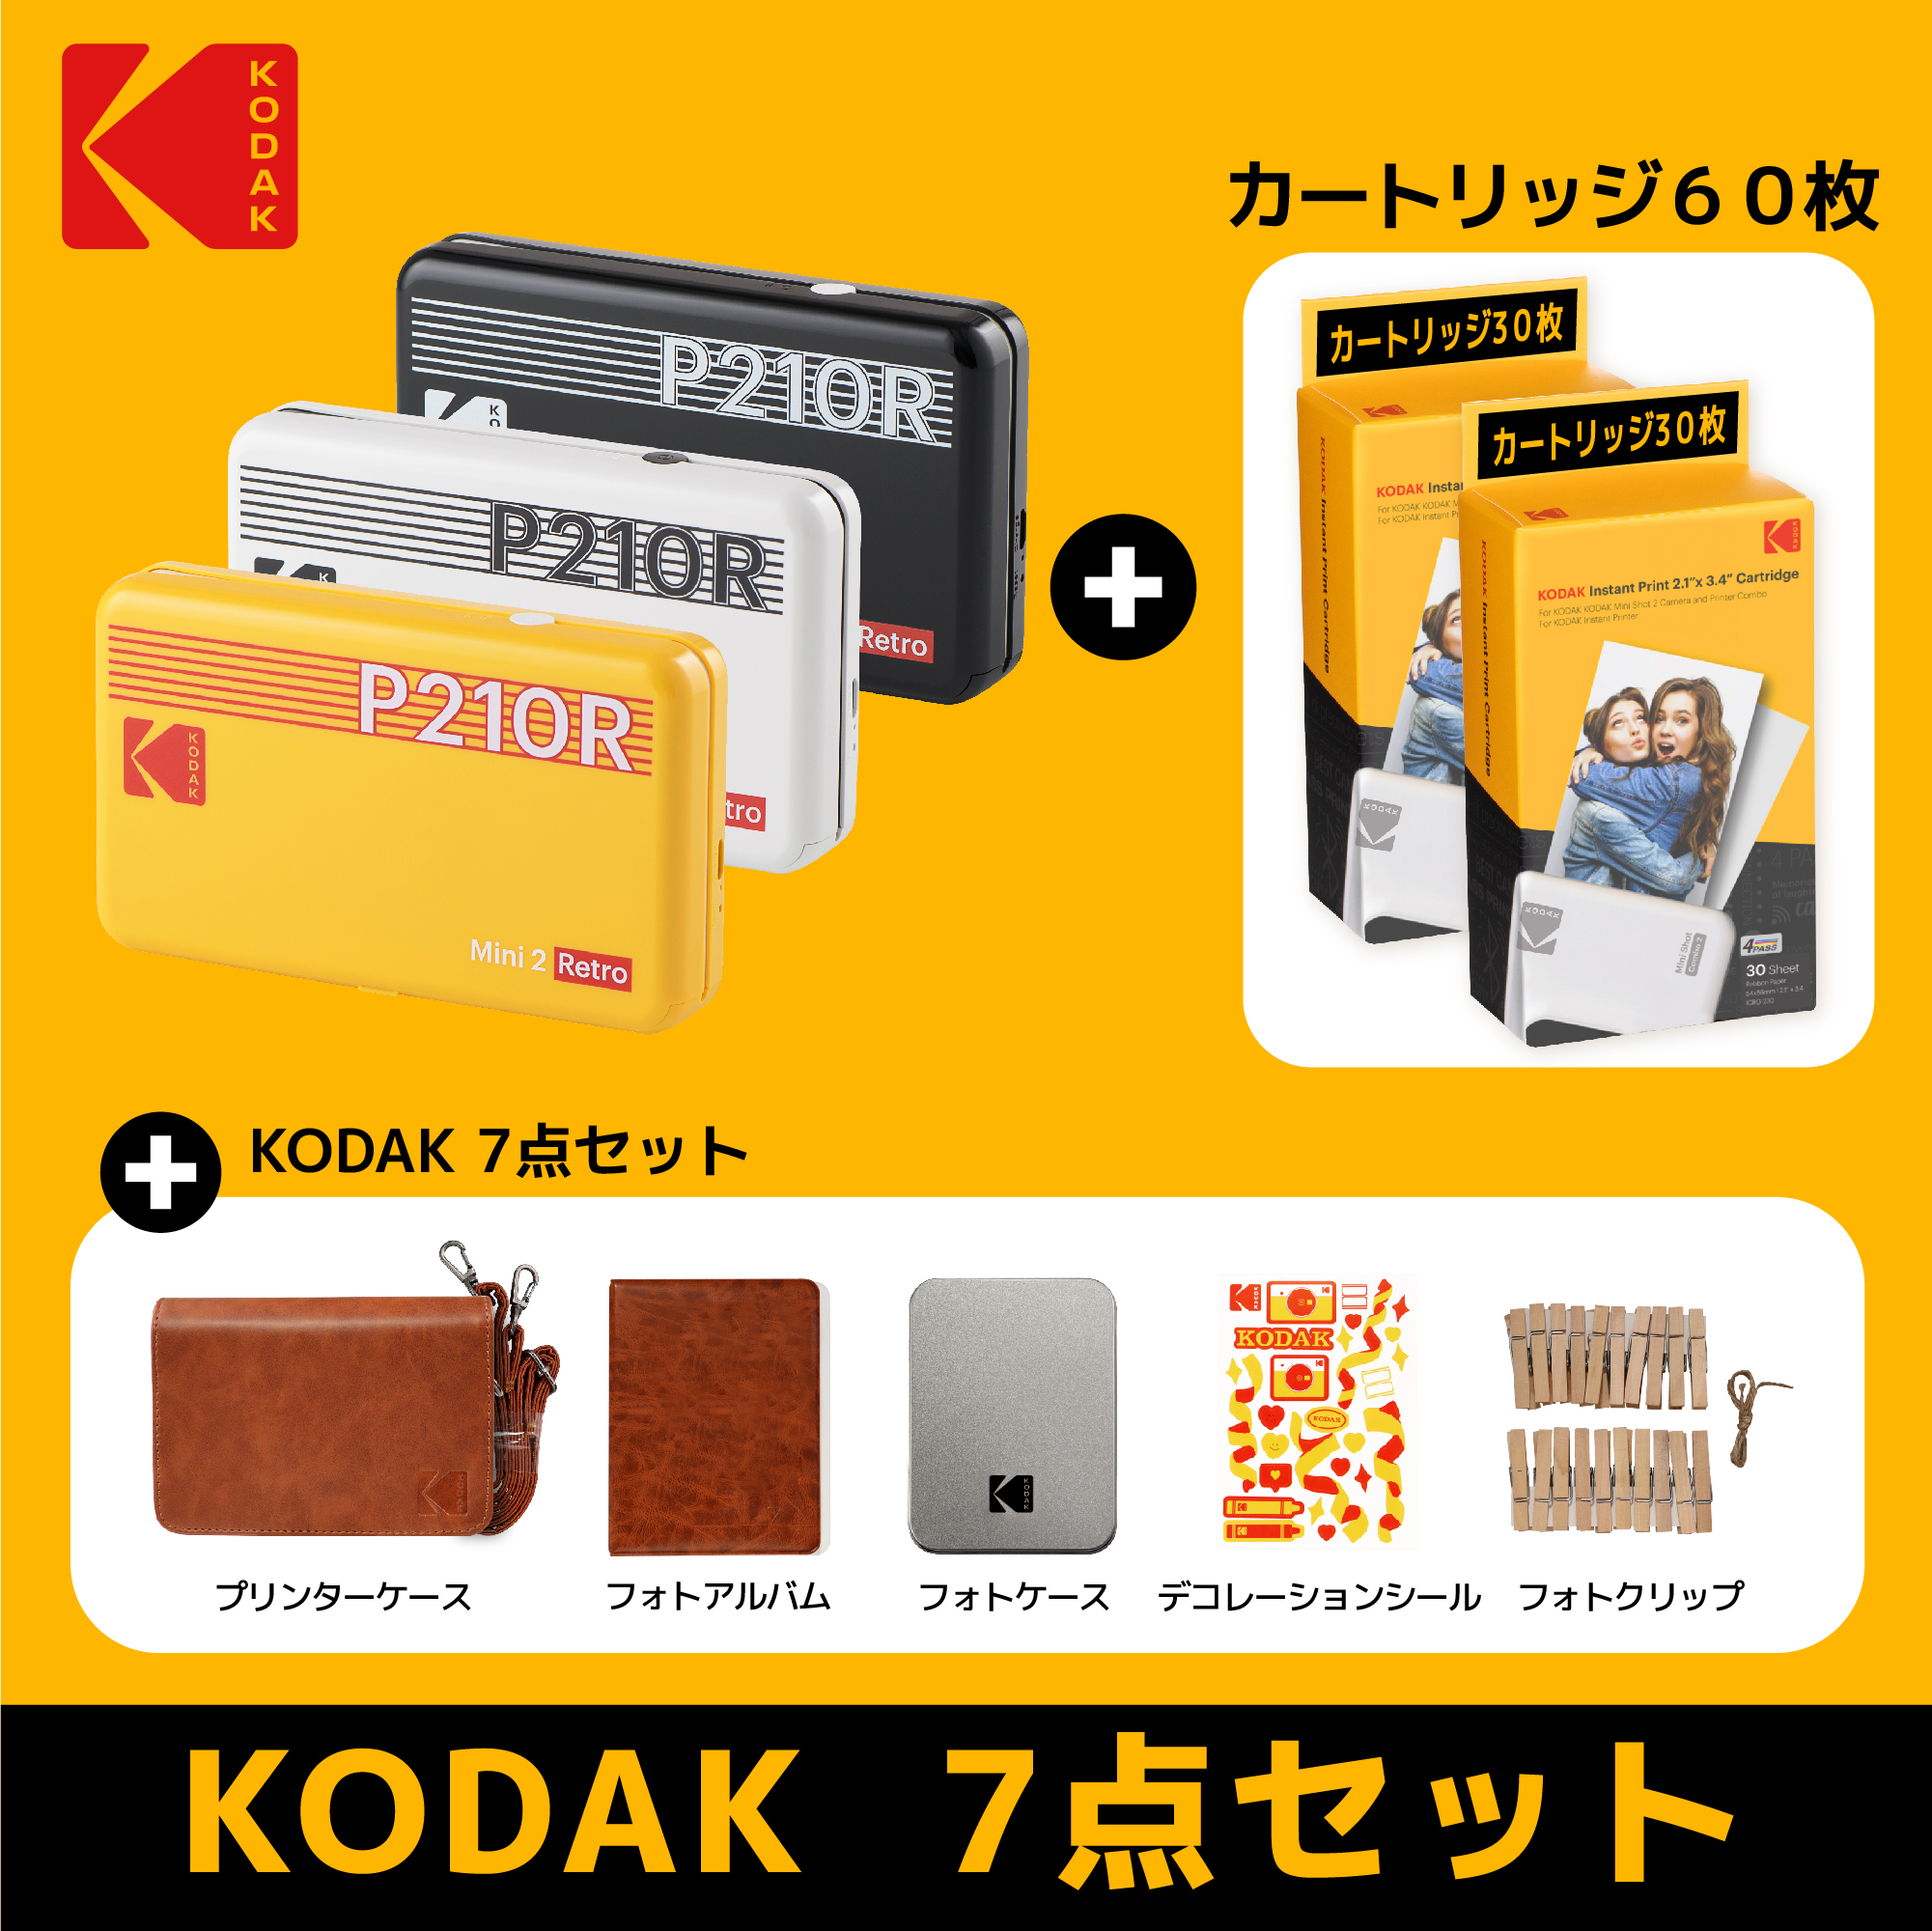 楽天市場 Kodak コダック フォトプリンター P210r 7点セット スマホ 写真 対応 モバイル プリンター コンパクト 小型 ミニフォトプリンター スマホプリンター Mini ミニ インスタントプリンター チェキ プリンター インスピック Bluetooth Iphone Android 60枚